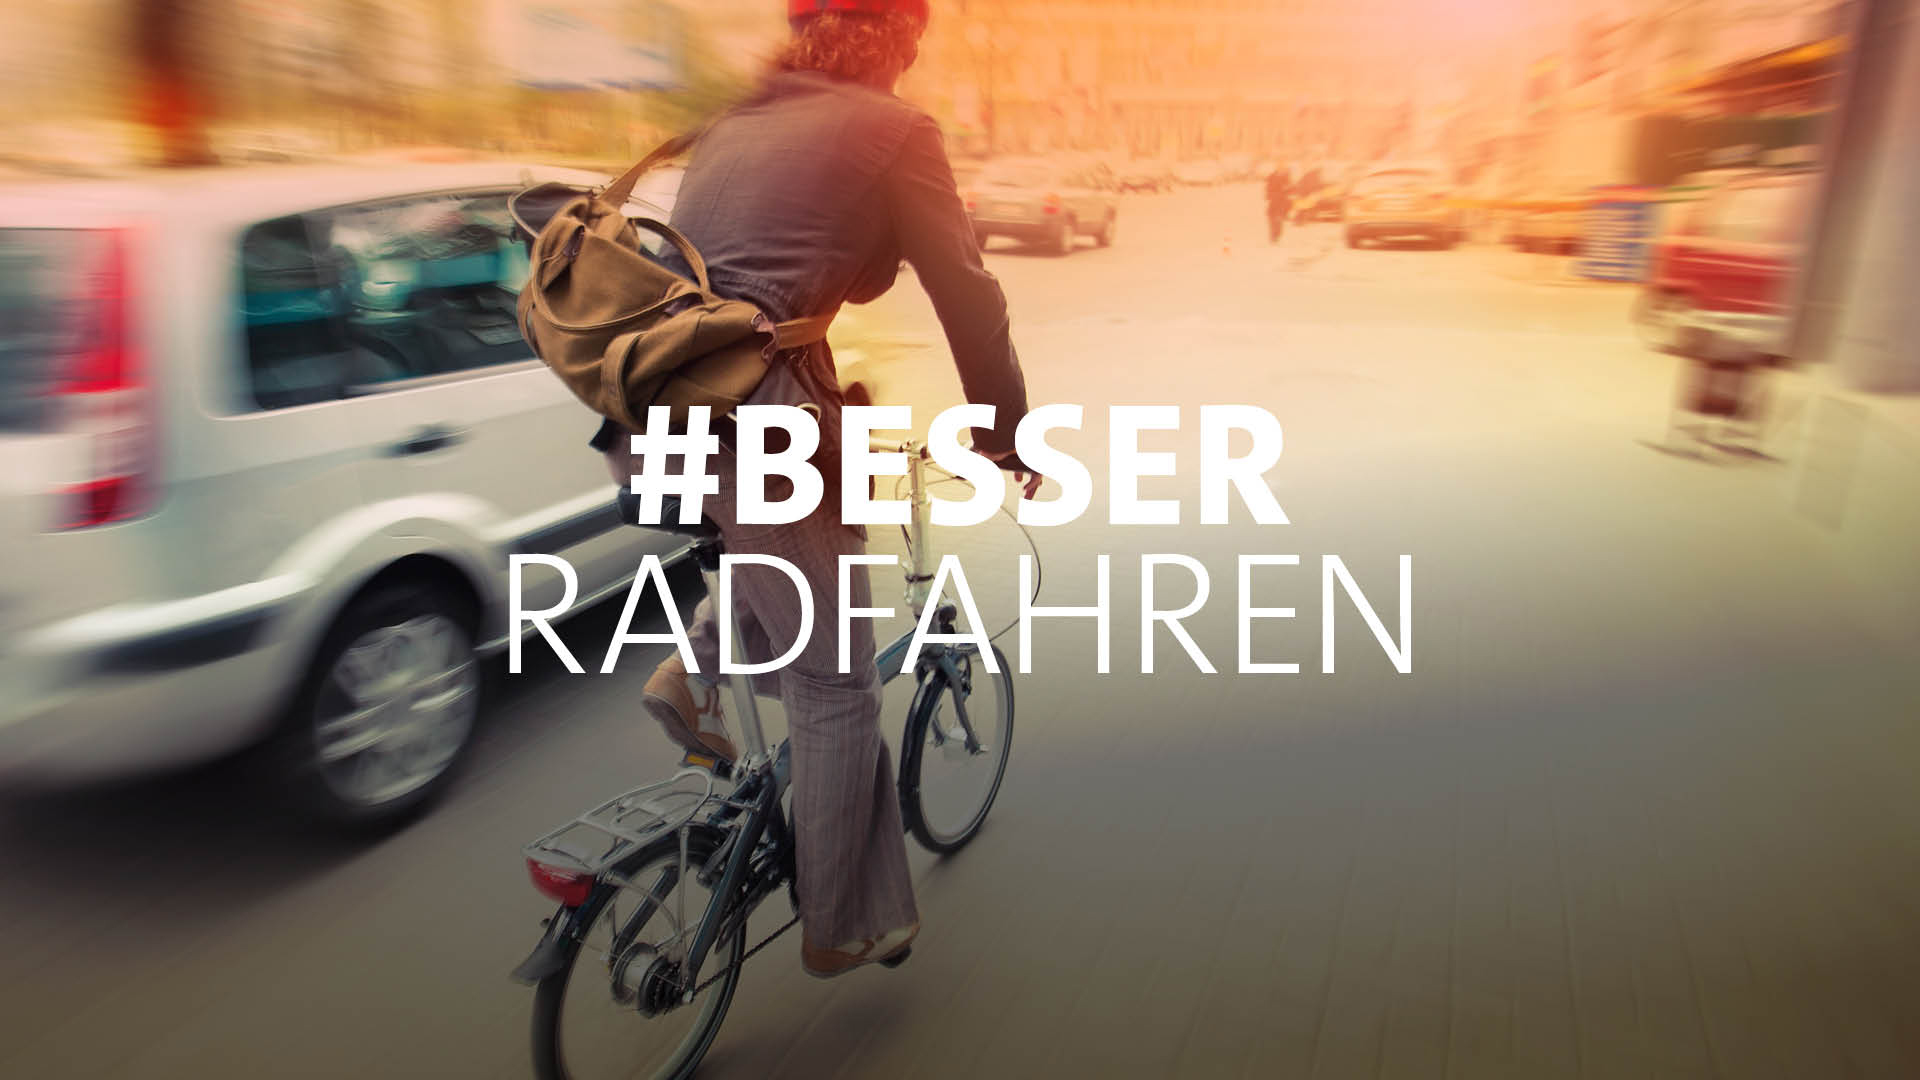 Themenbild eines Radfahrers mit der Aufschrift "besser radfahren" | SWR